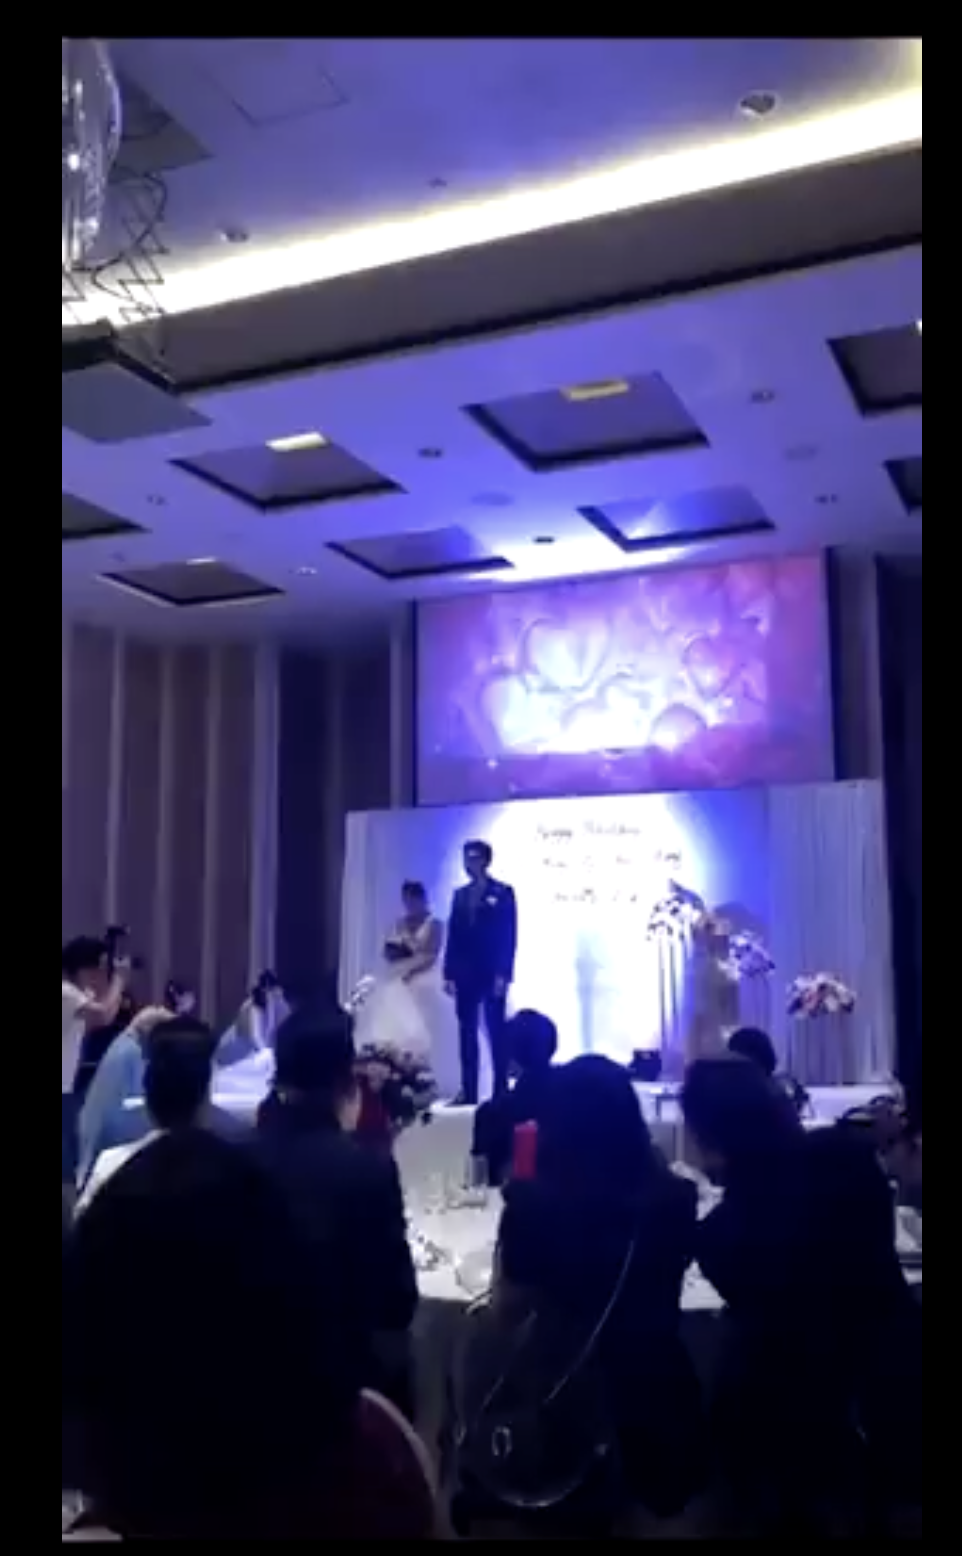 Les jeunes mariés sont photographiés ensemble sur la scène. | Source : twitter.com/TuanConCom1